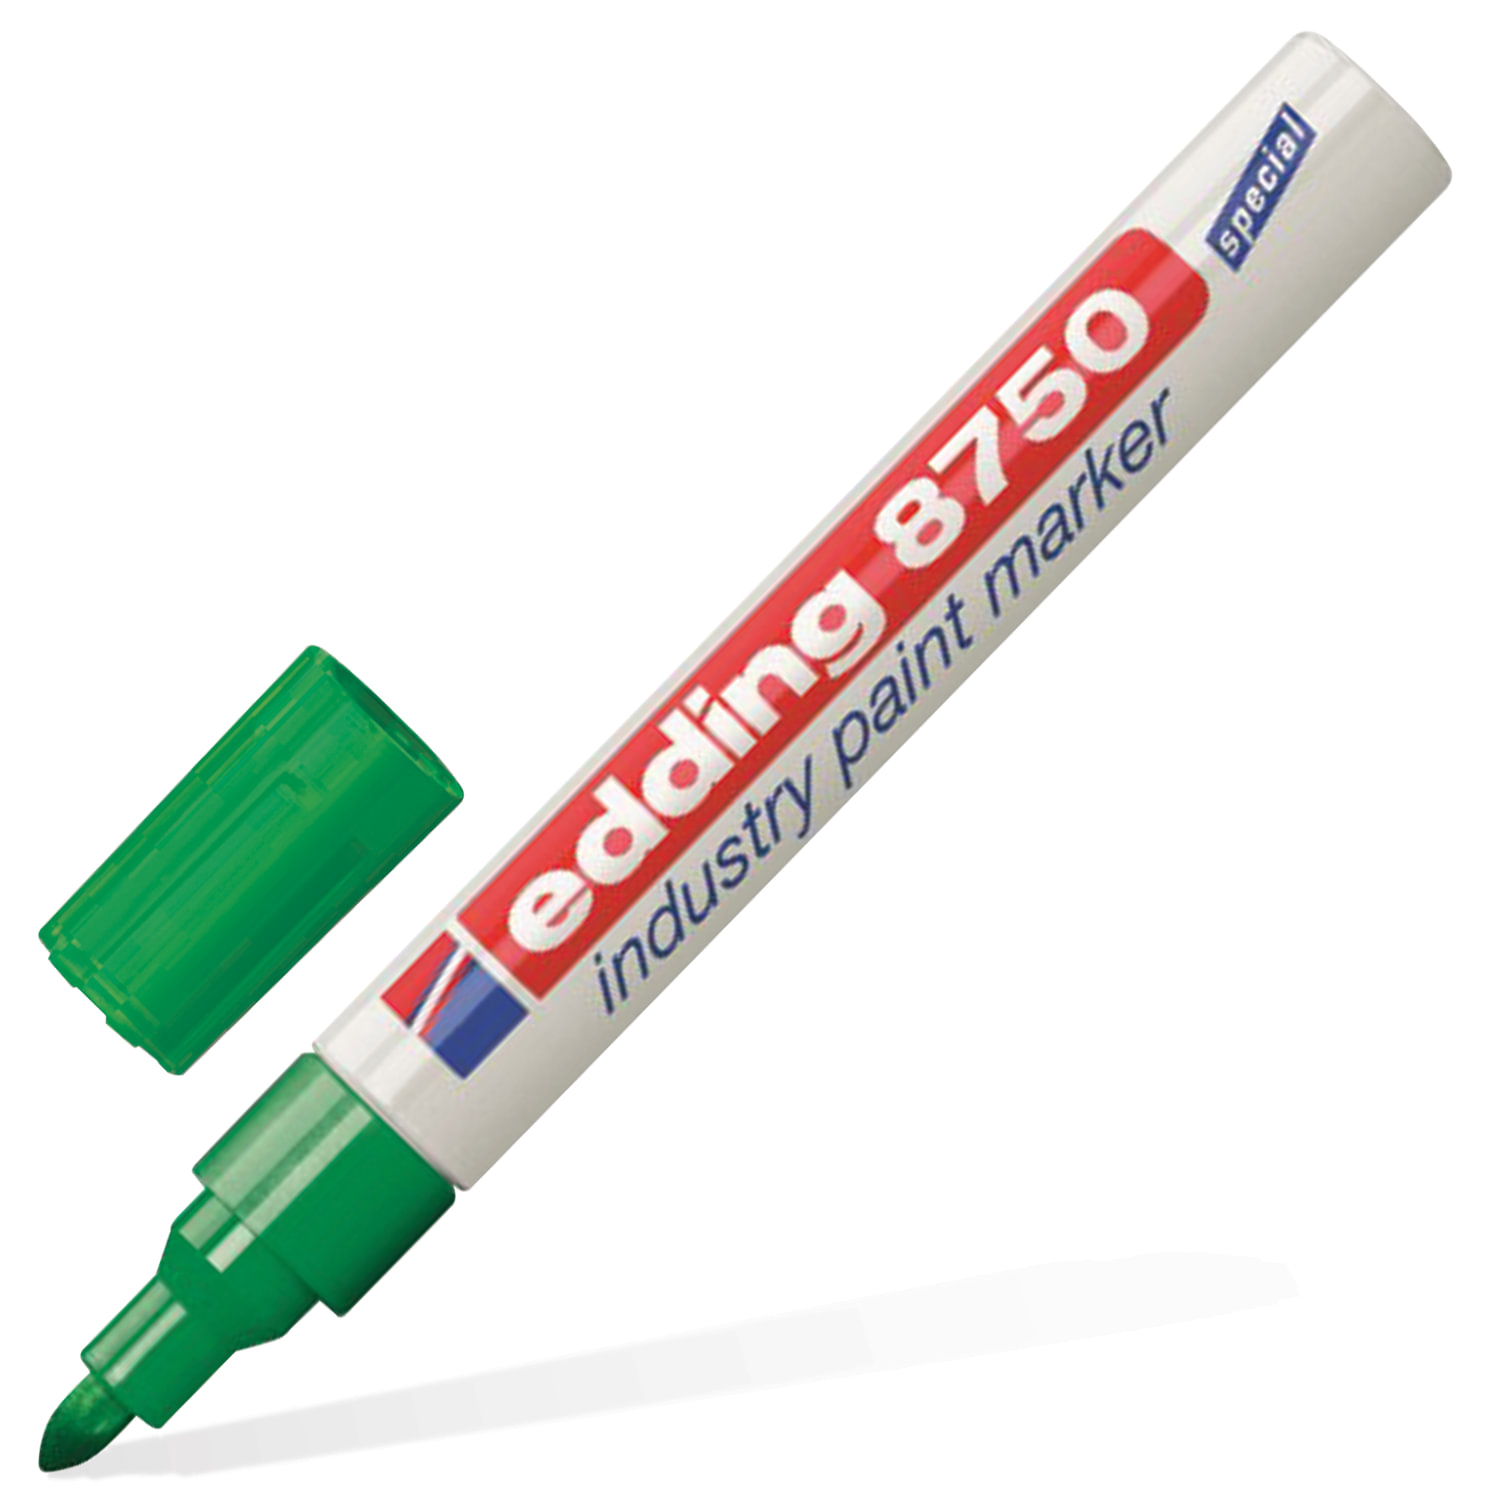 Маркер-краска лаковый (paint marker) EDDING 8750, ЗЕЛЕНЫЙ, 2-4 мм, круглый наконечник, алюминиевый корпус, Е-8750/4 купите по выгодной цене